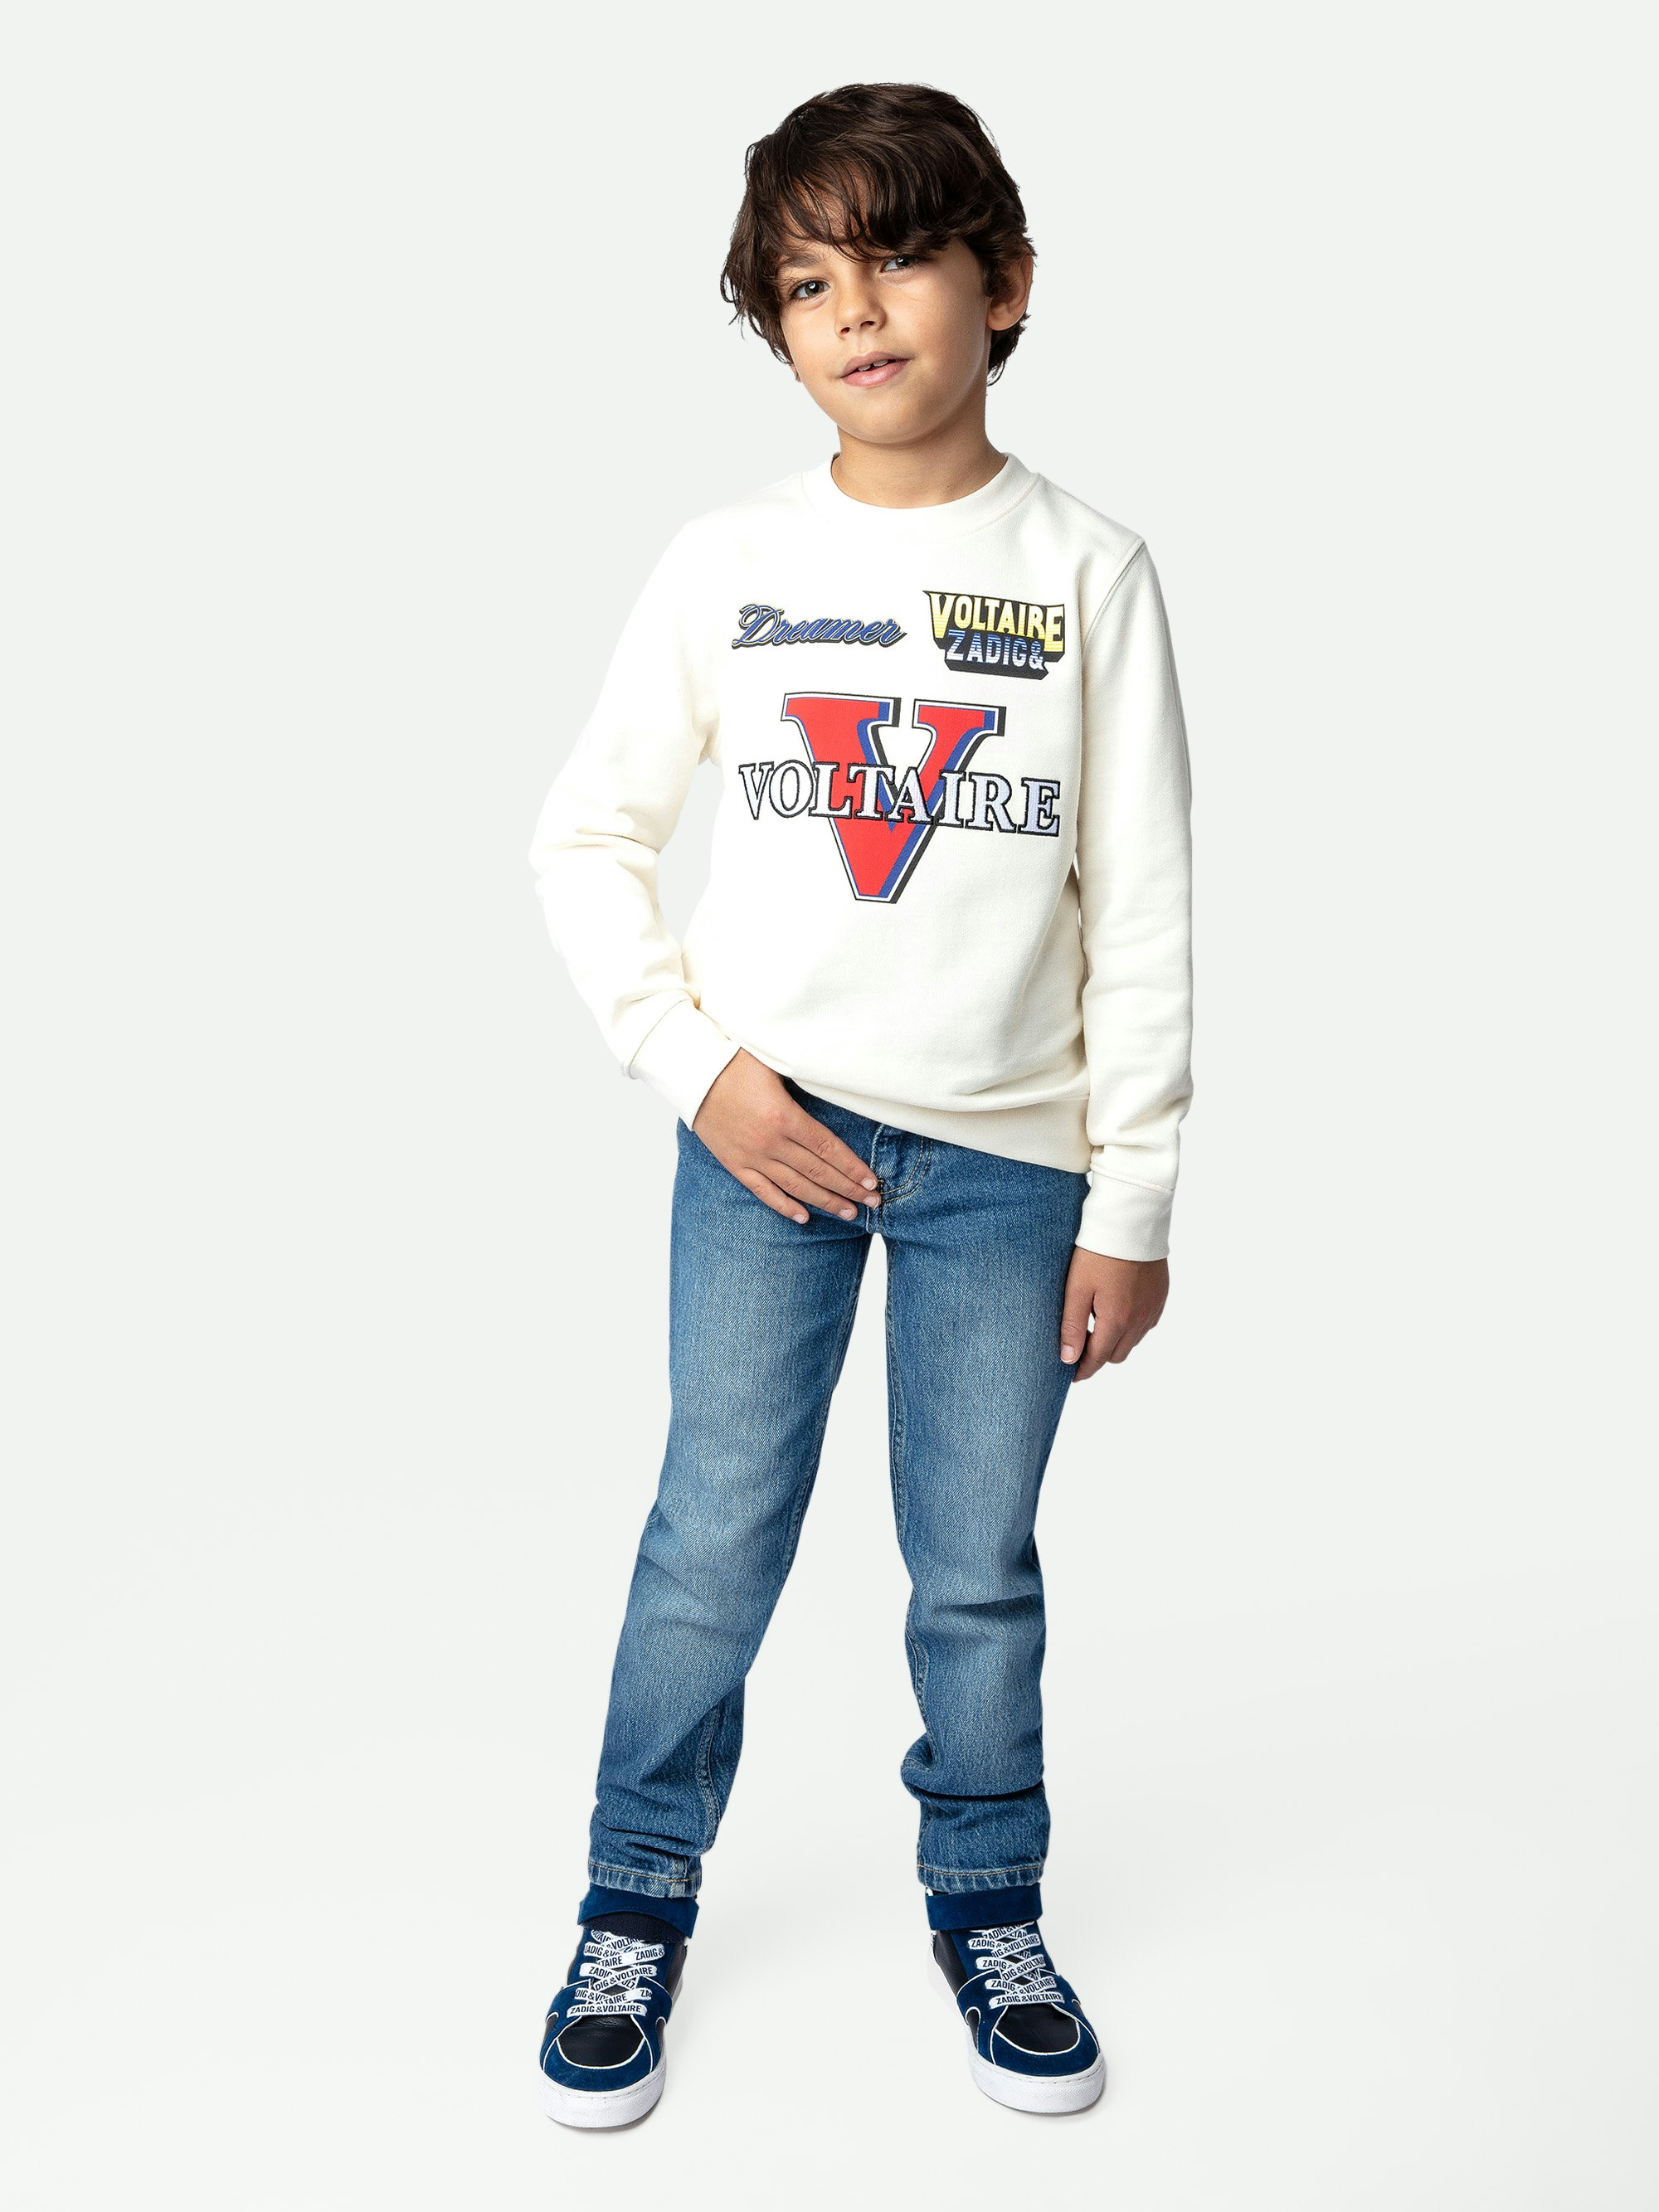 Simba Boys’ Sweatshirt - Boys’ ecru cotton fleece sweatshirt with illustrations, embroidery and elbow pads.